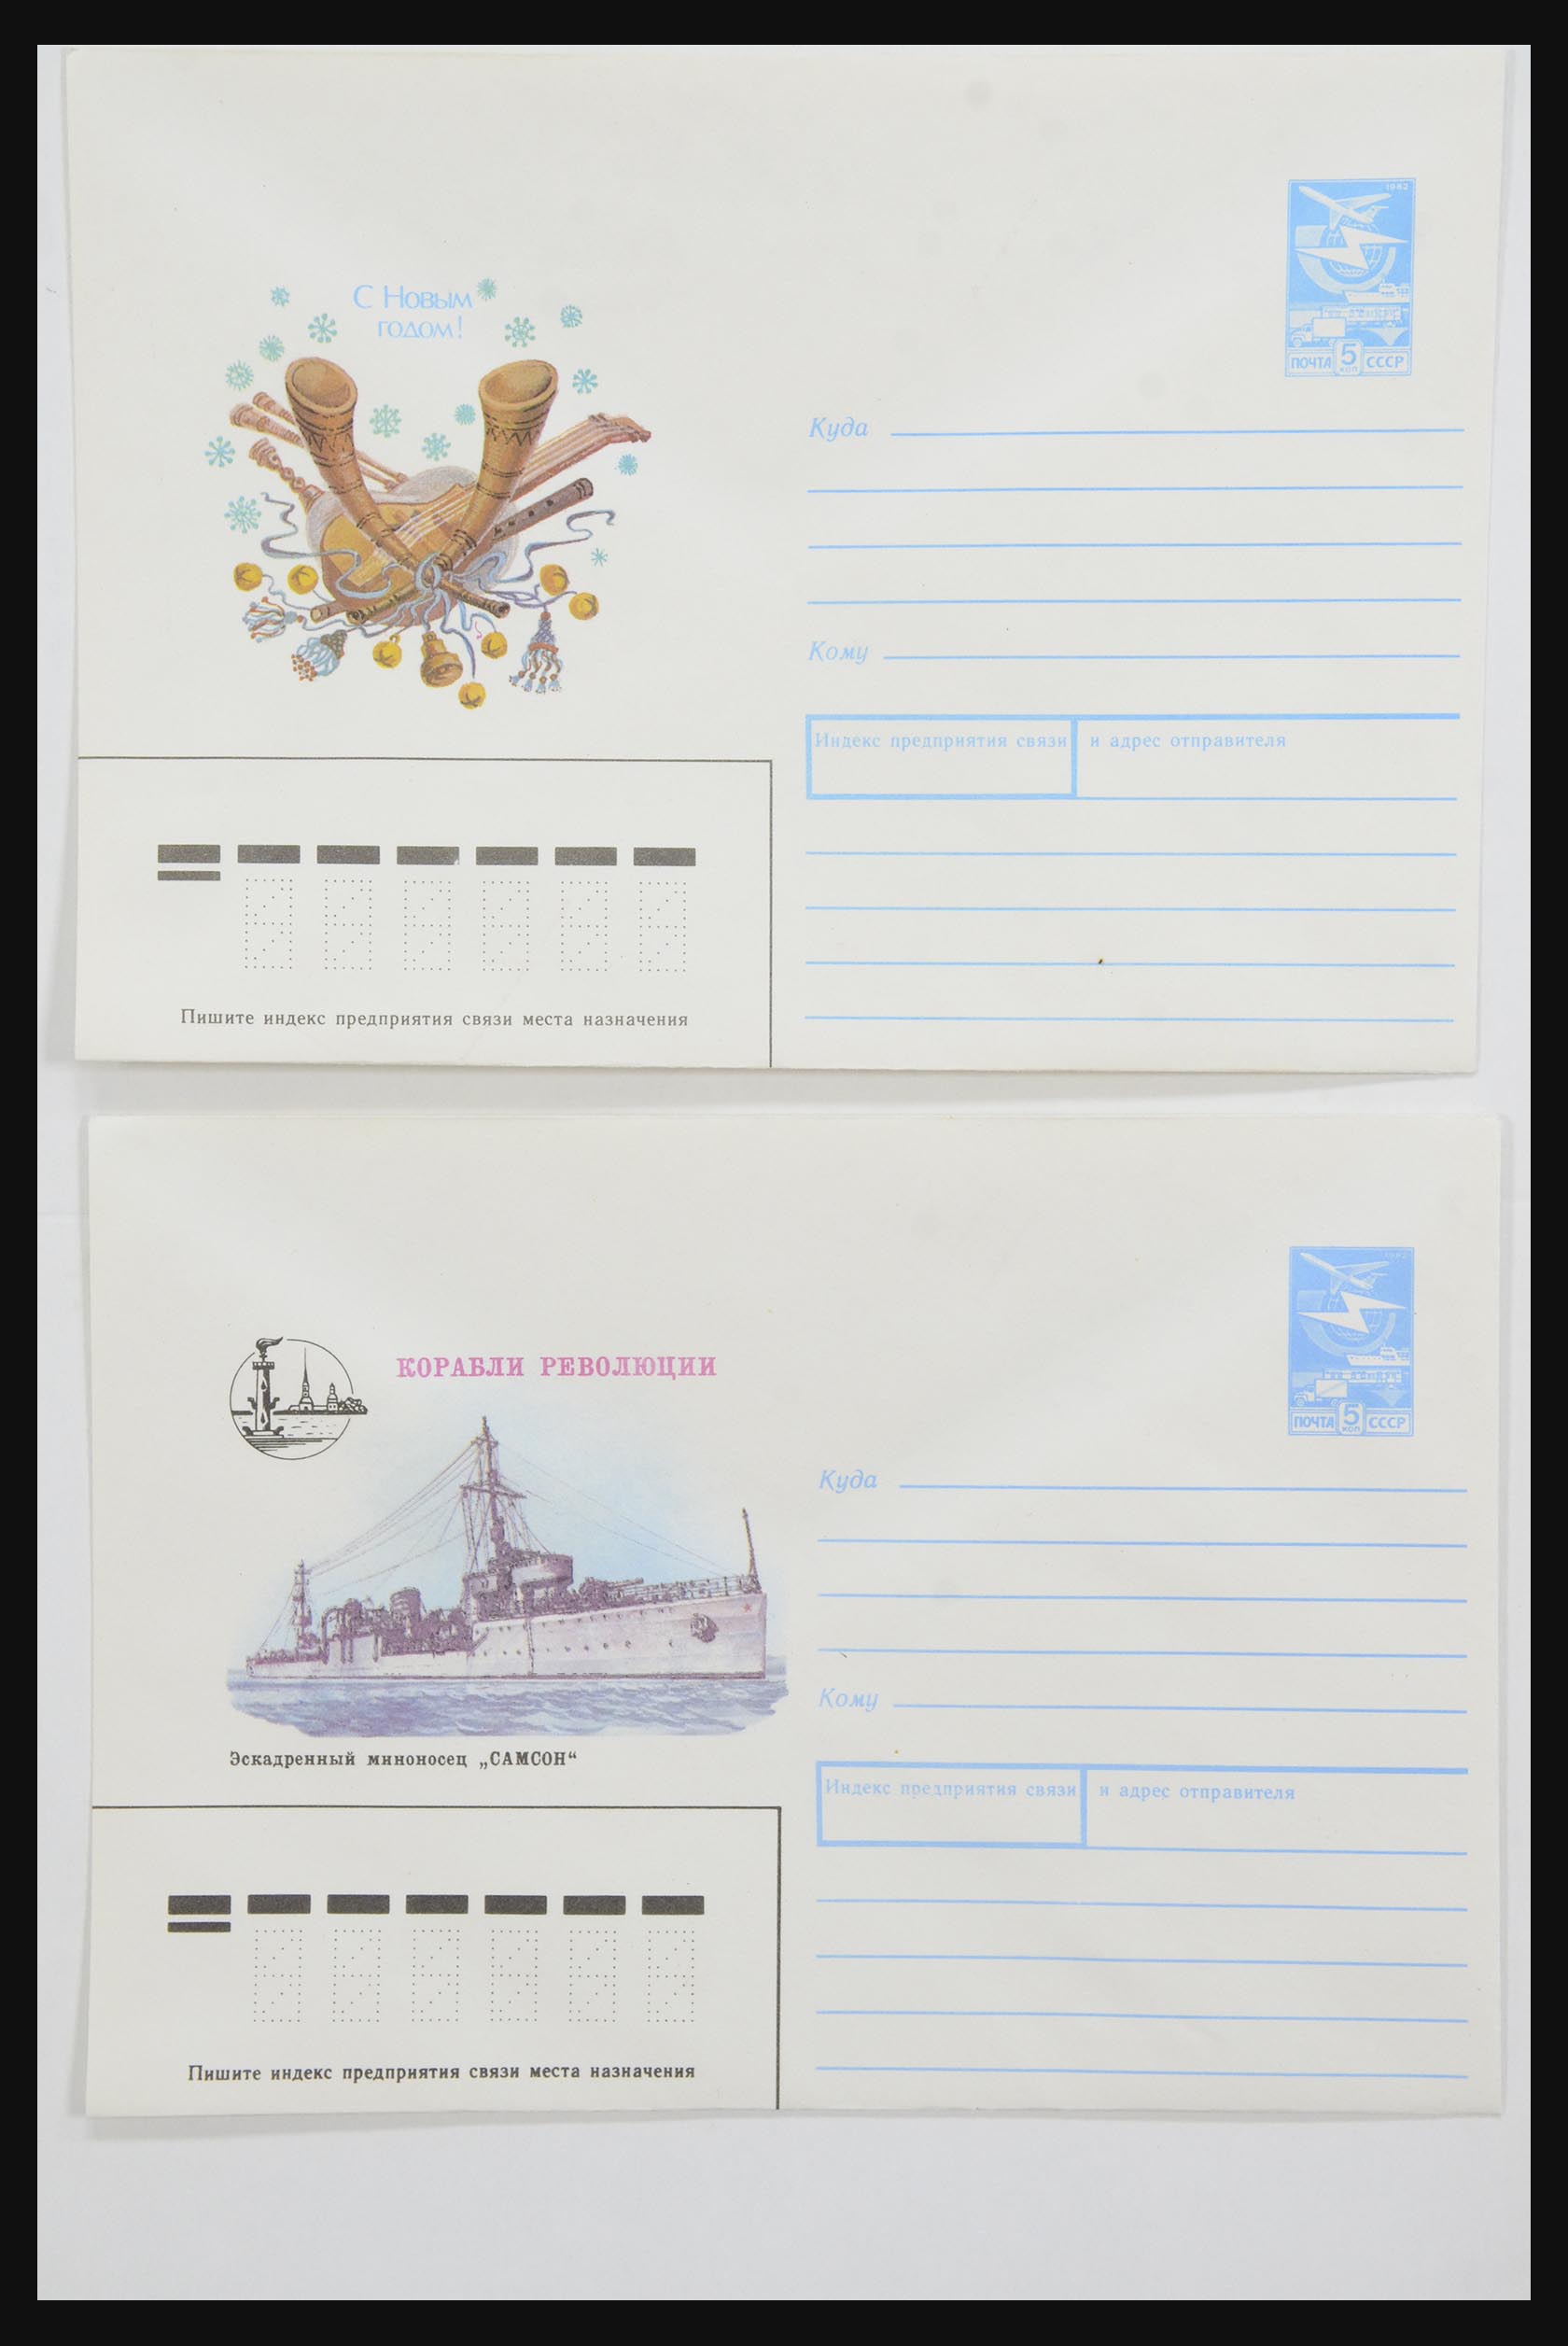 31928 0056 - 31928 Oost Europa brieven jaren 60/90.